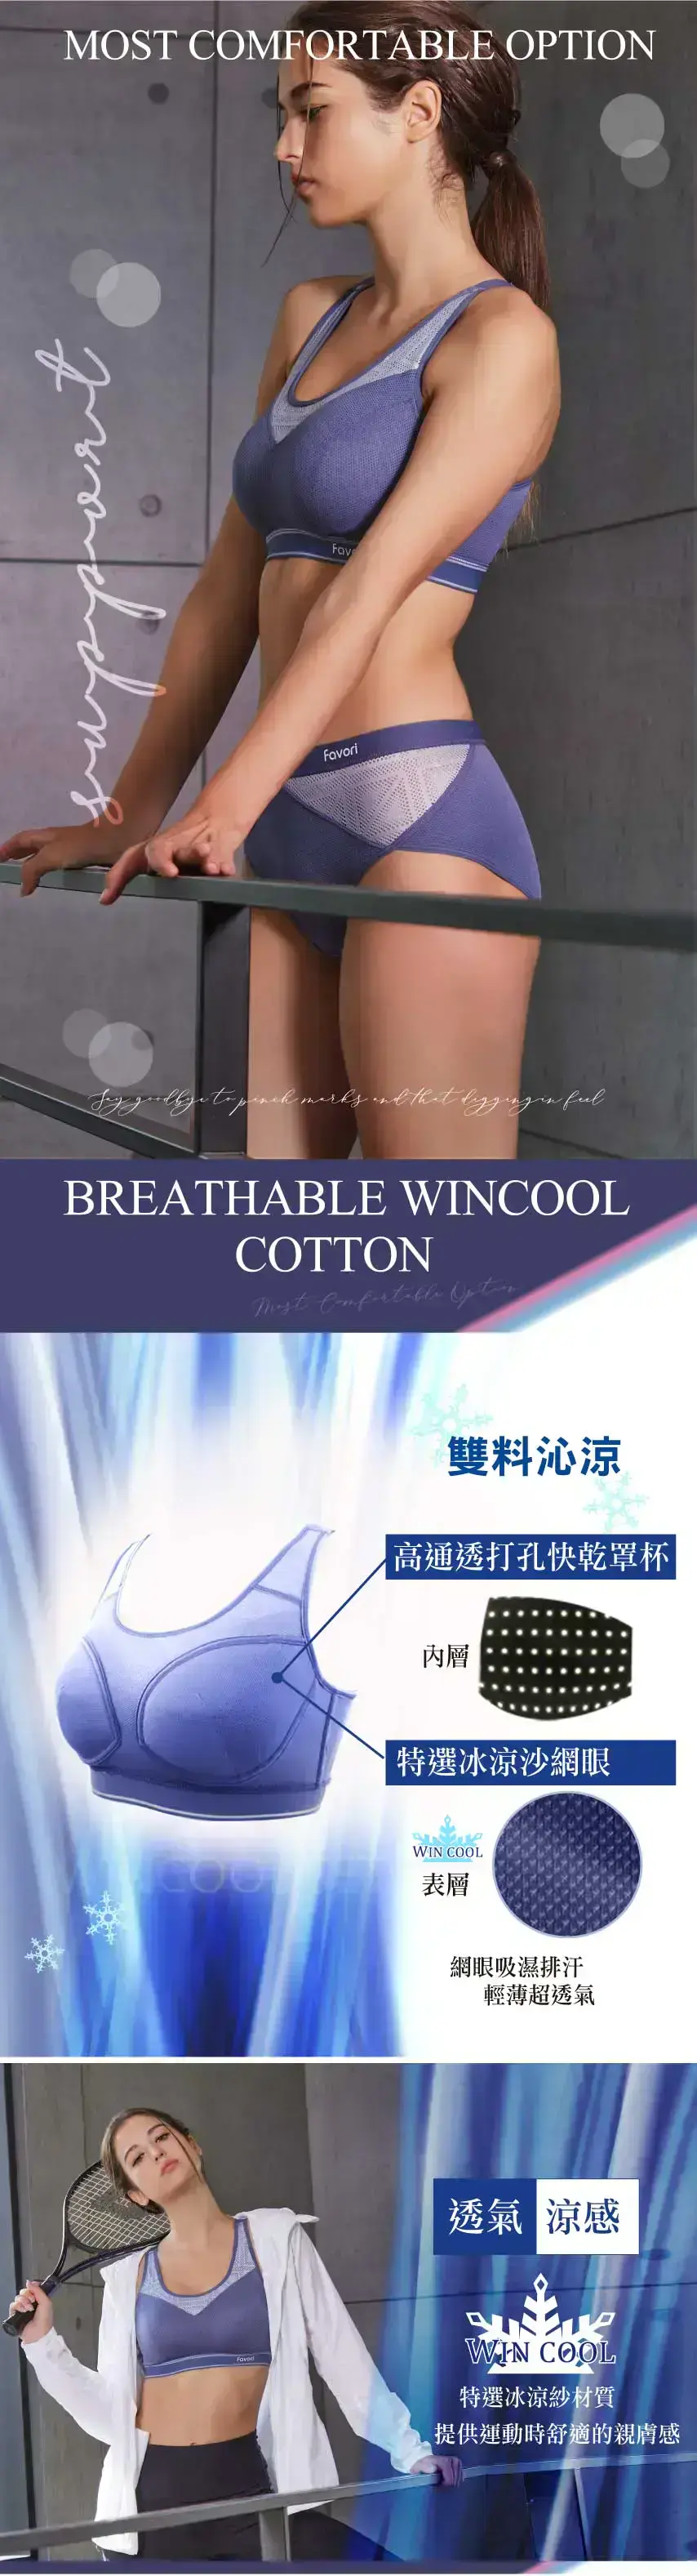 重機能WINCOOL不受拘束罩杯專業運動胸衣(銀河紫)